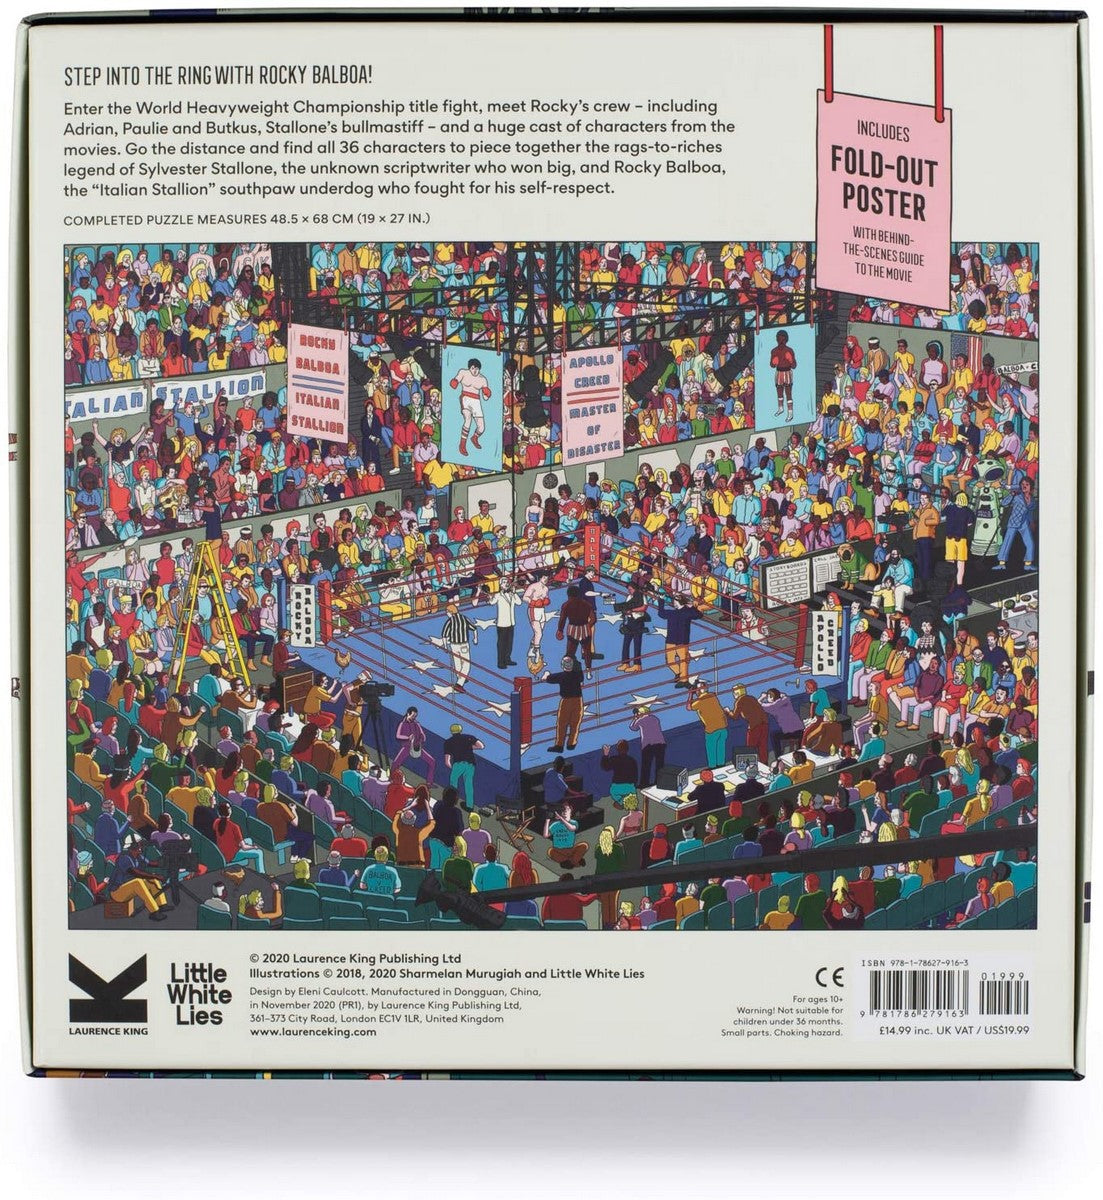 Stallone's Big Fight 1000pc Puzzle